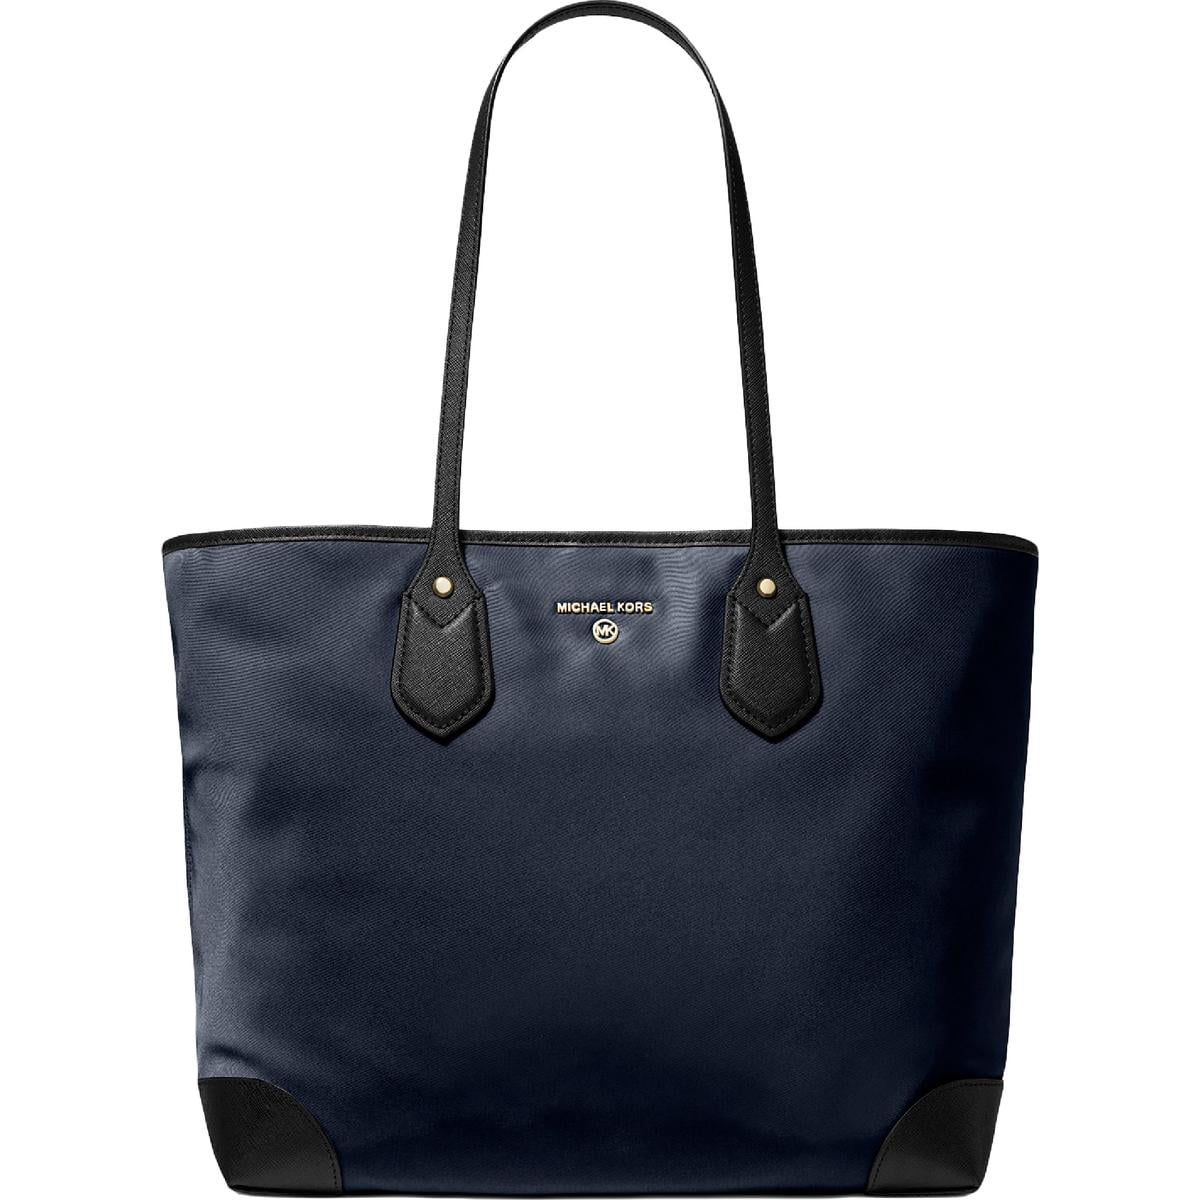 Totes bags Michael Kors - Eva large tote bag in navy blue